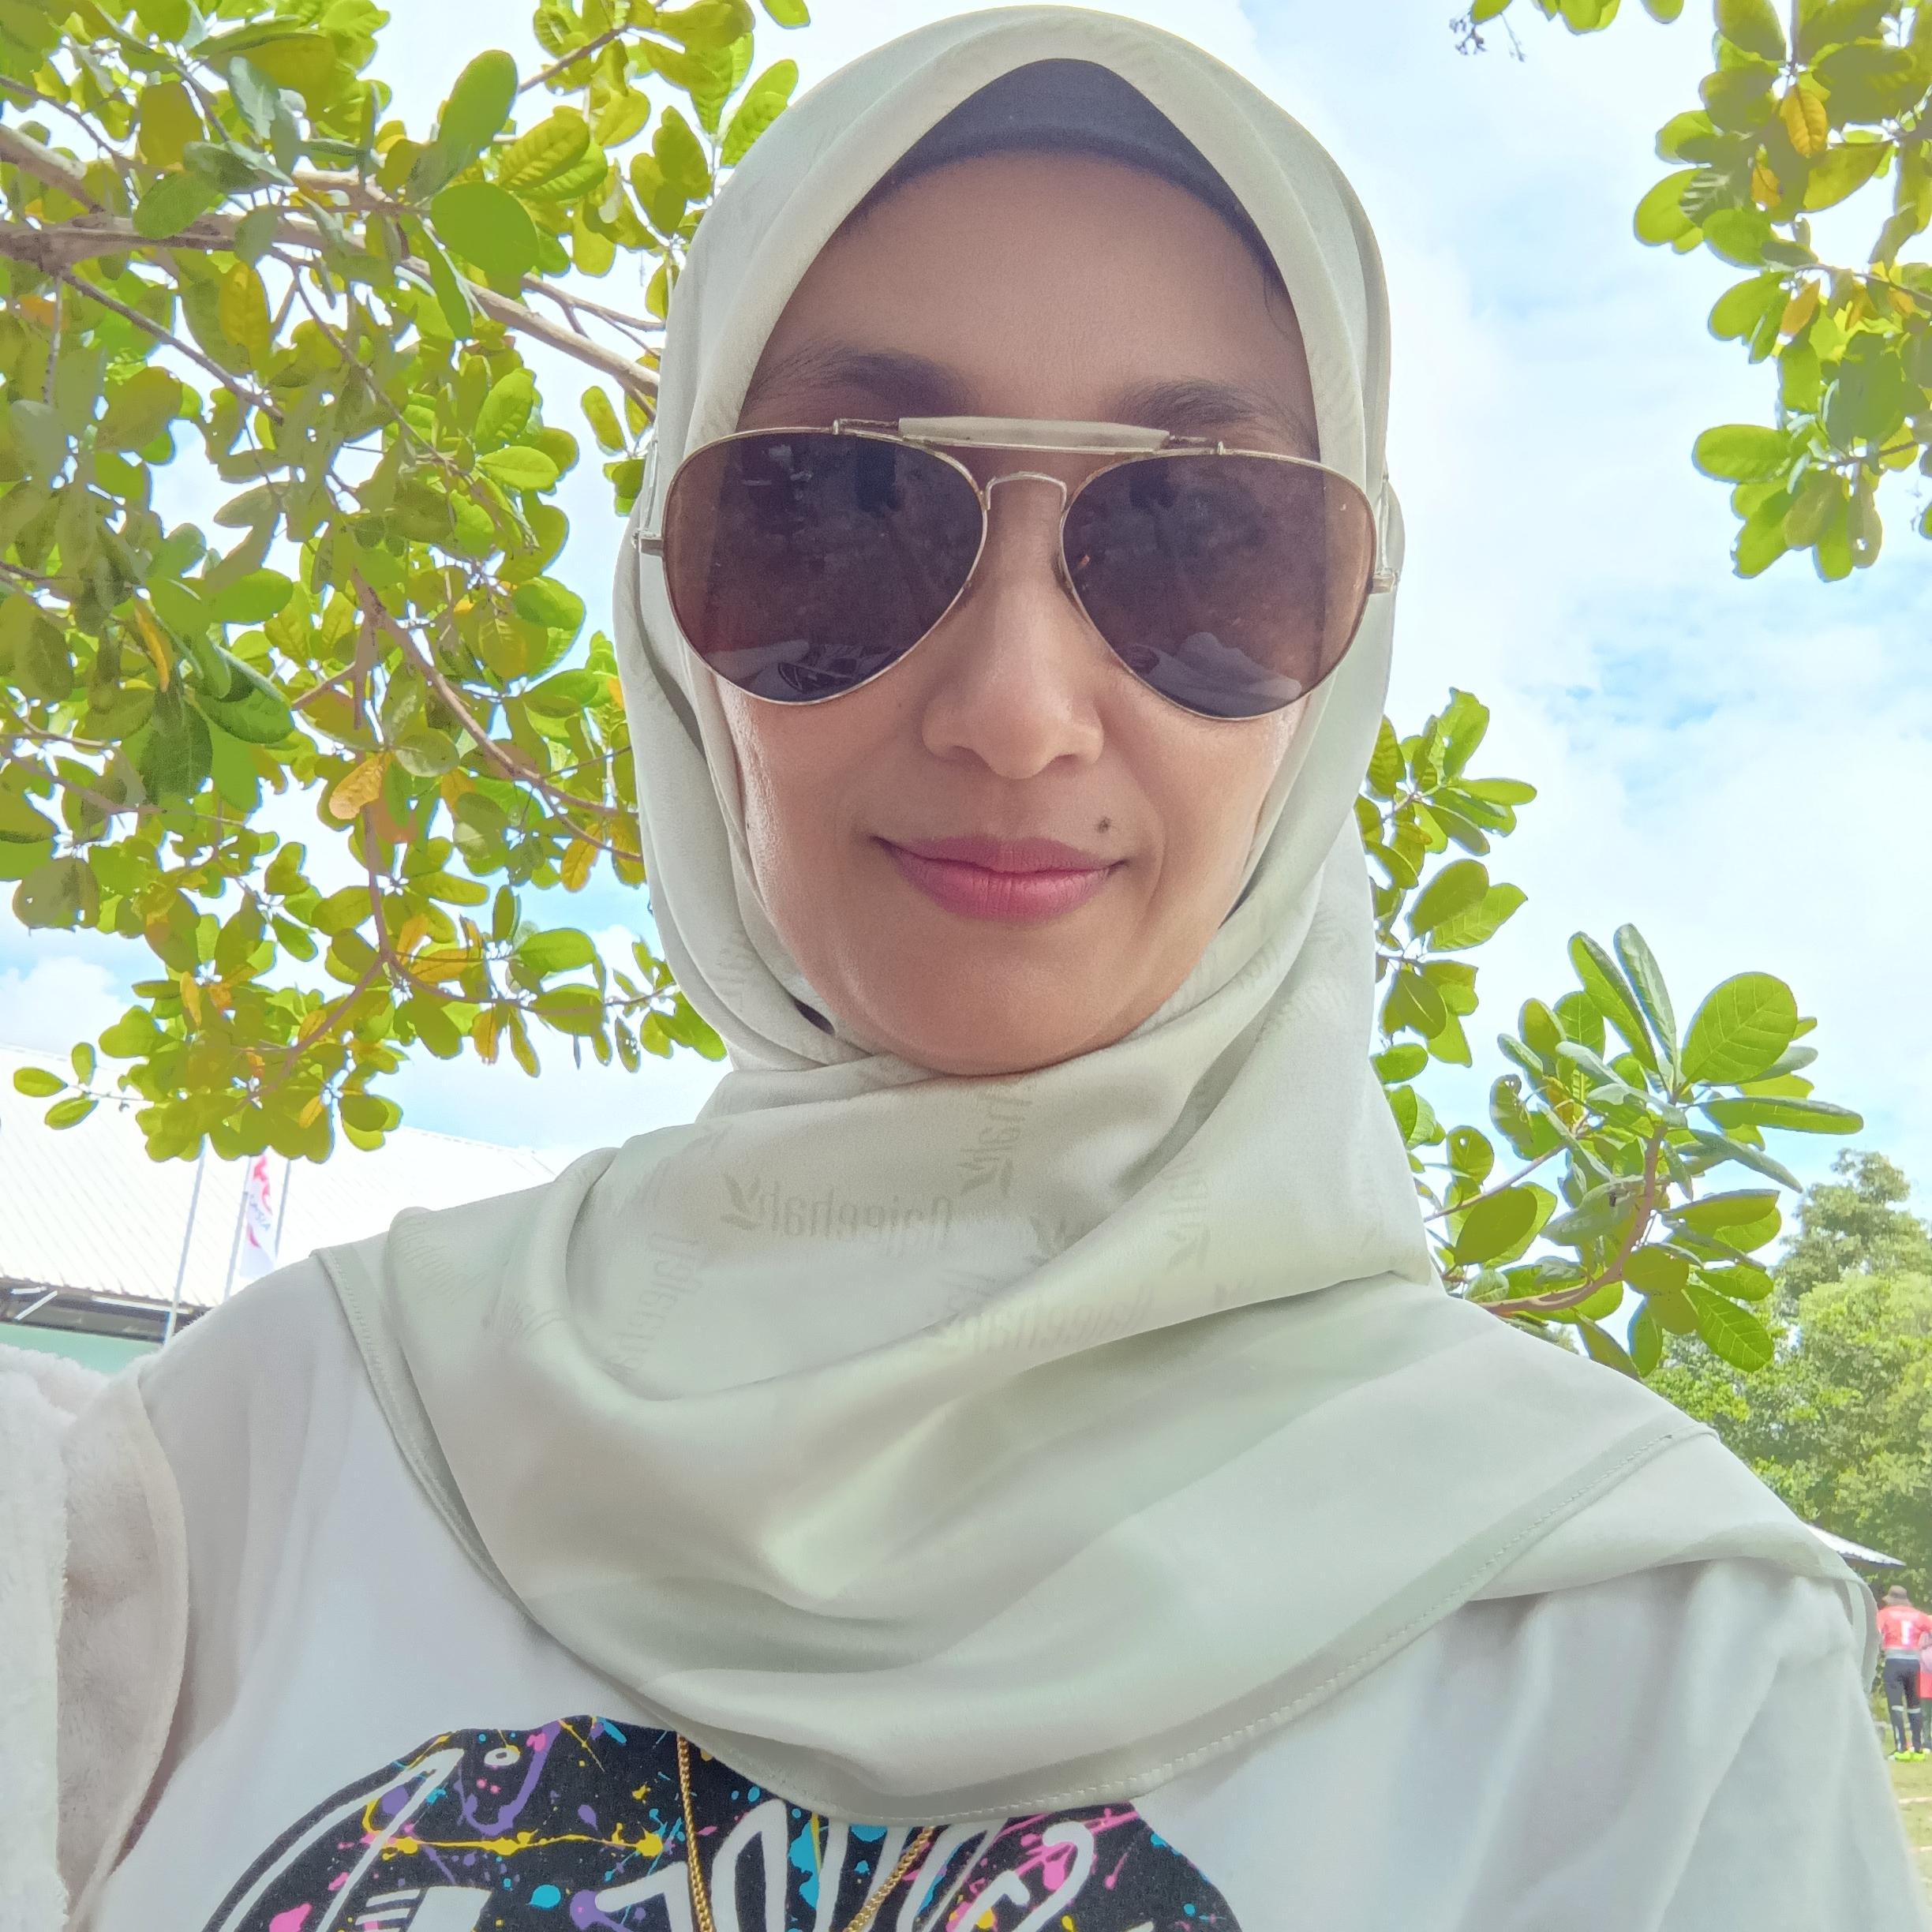 Siti Hajarの画像